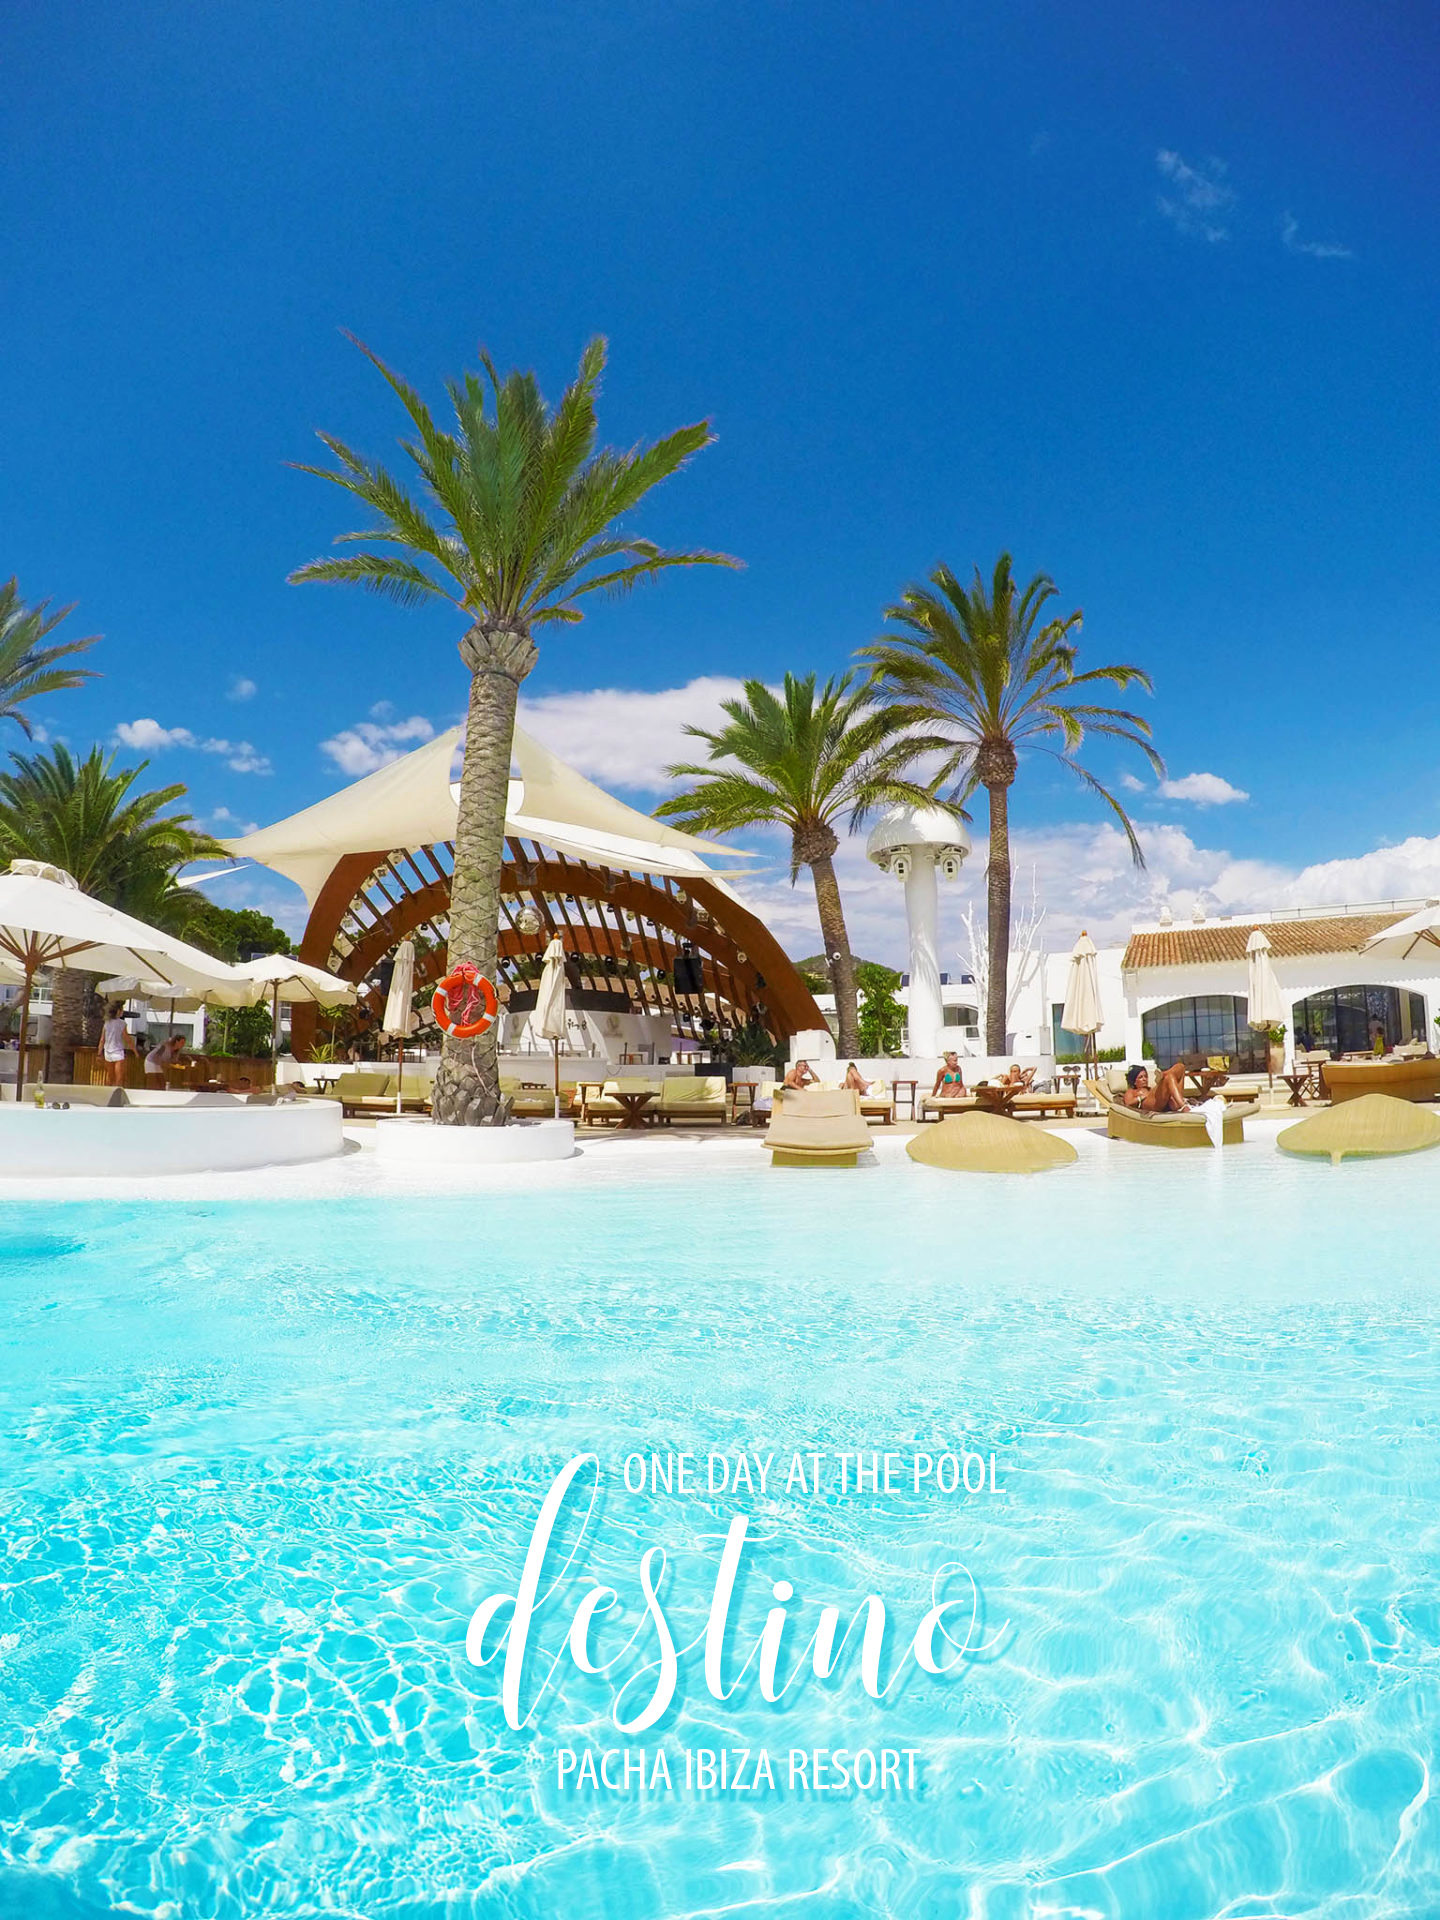 Destino Pacha Ibiza Resort Pinterest